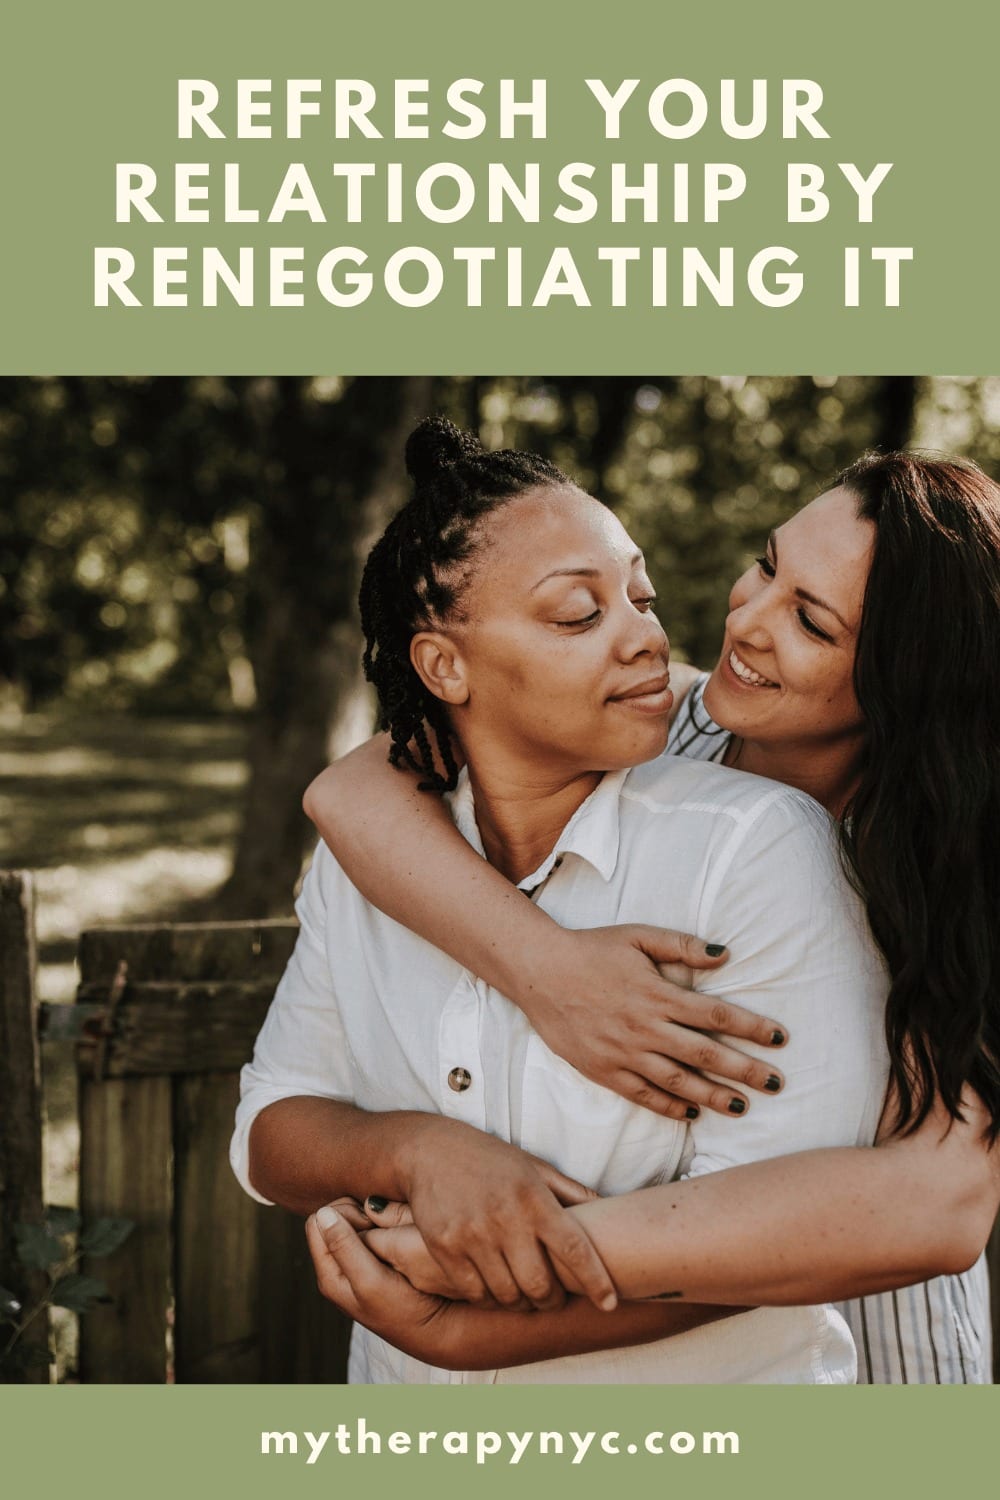 renegotiating